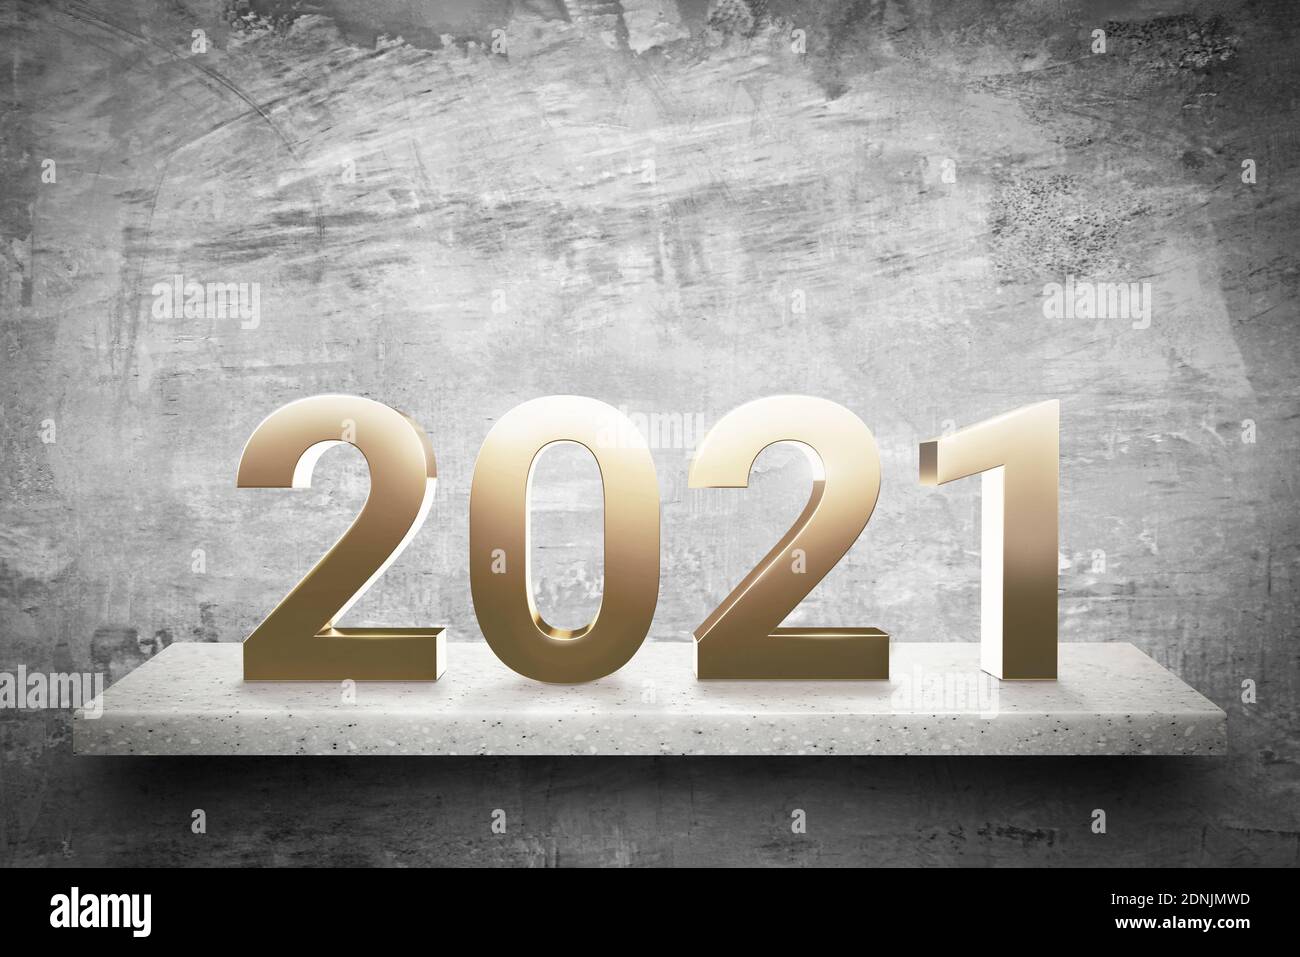 Goldene 2021 Nummern auf Marmorsteinregal in grungy grau Betonwand Hintergrund für das neue Jahr Konzept Stockfoto